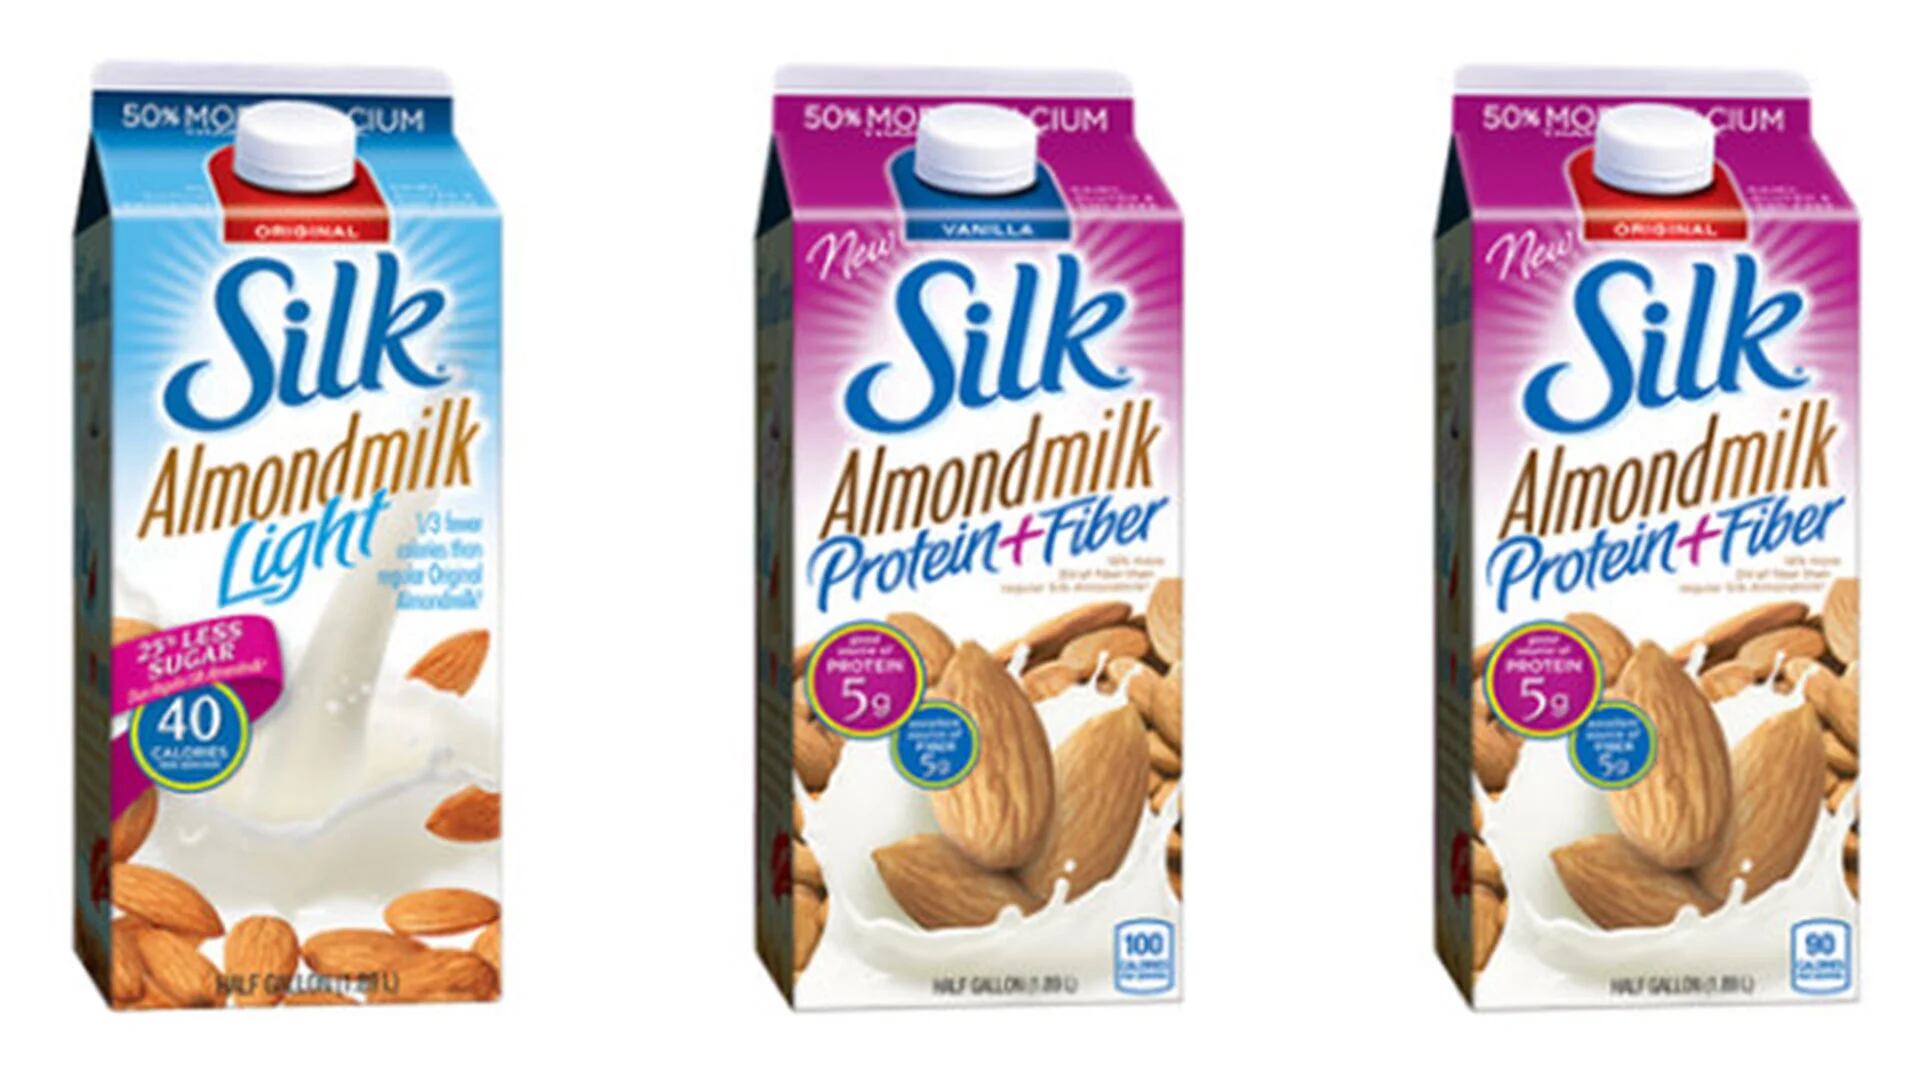 Silk, propiedad de WhiteWave Foods, tiene varios tipos de leche de almendra en su lista de productos